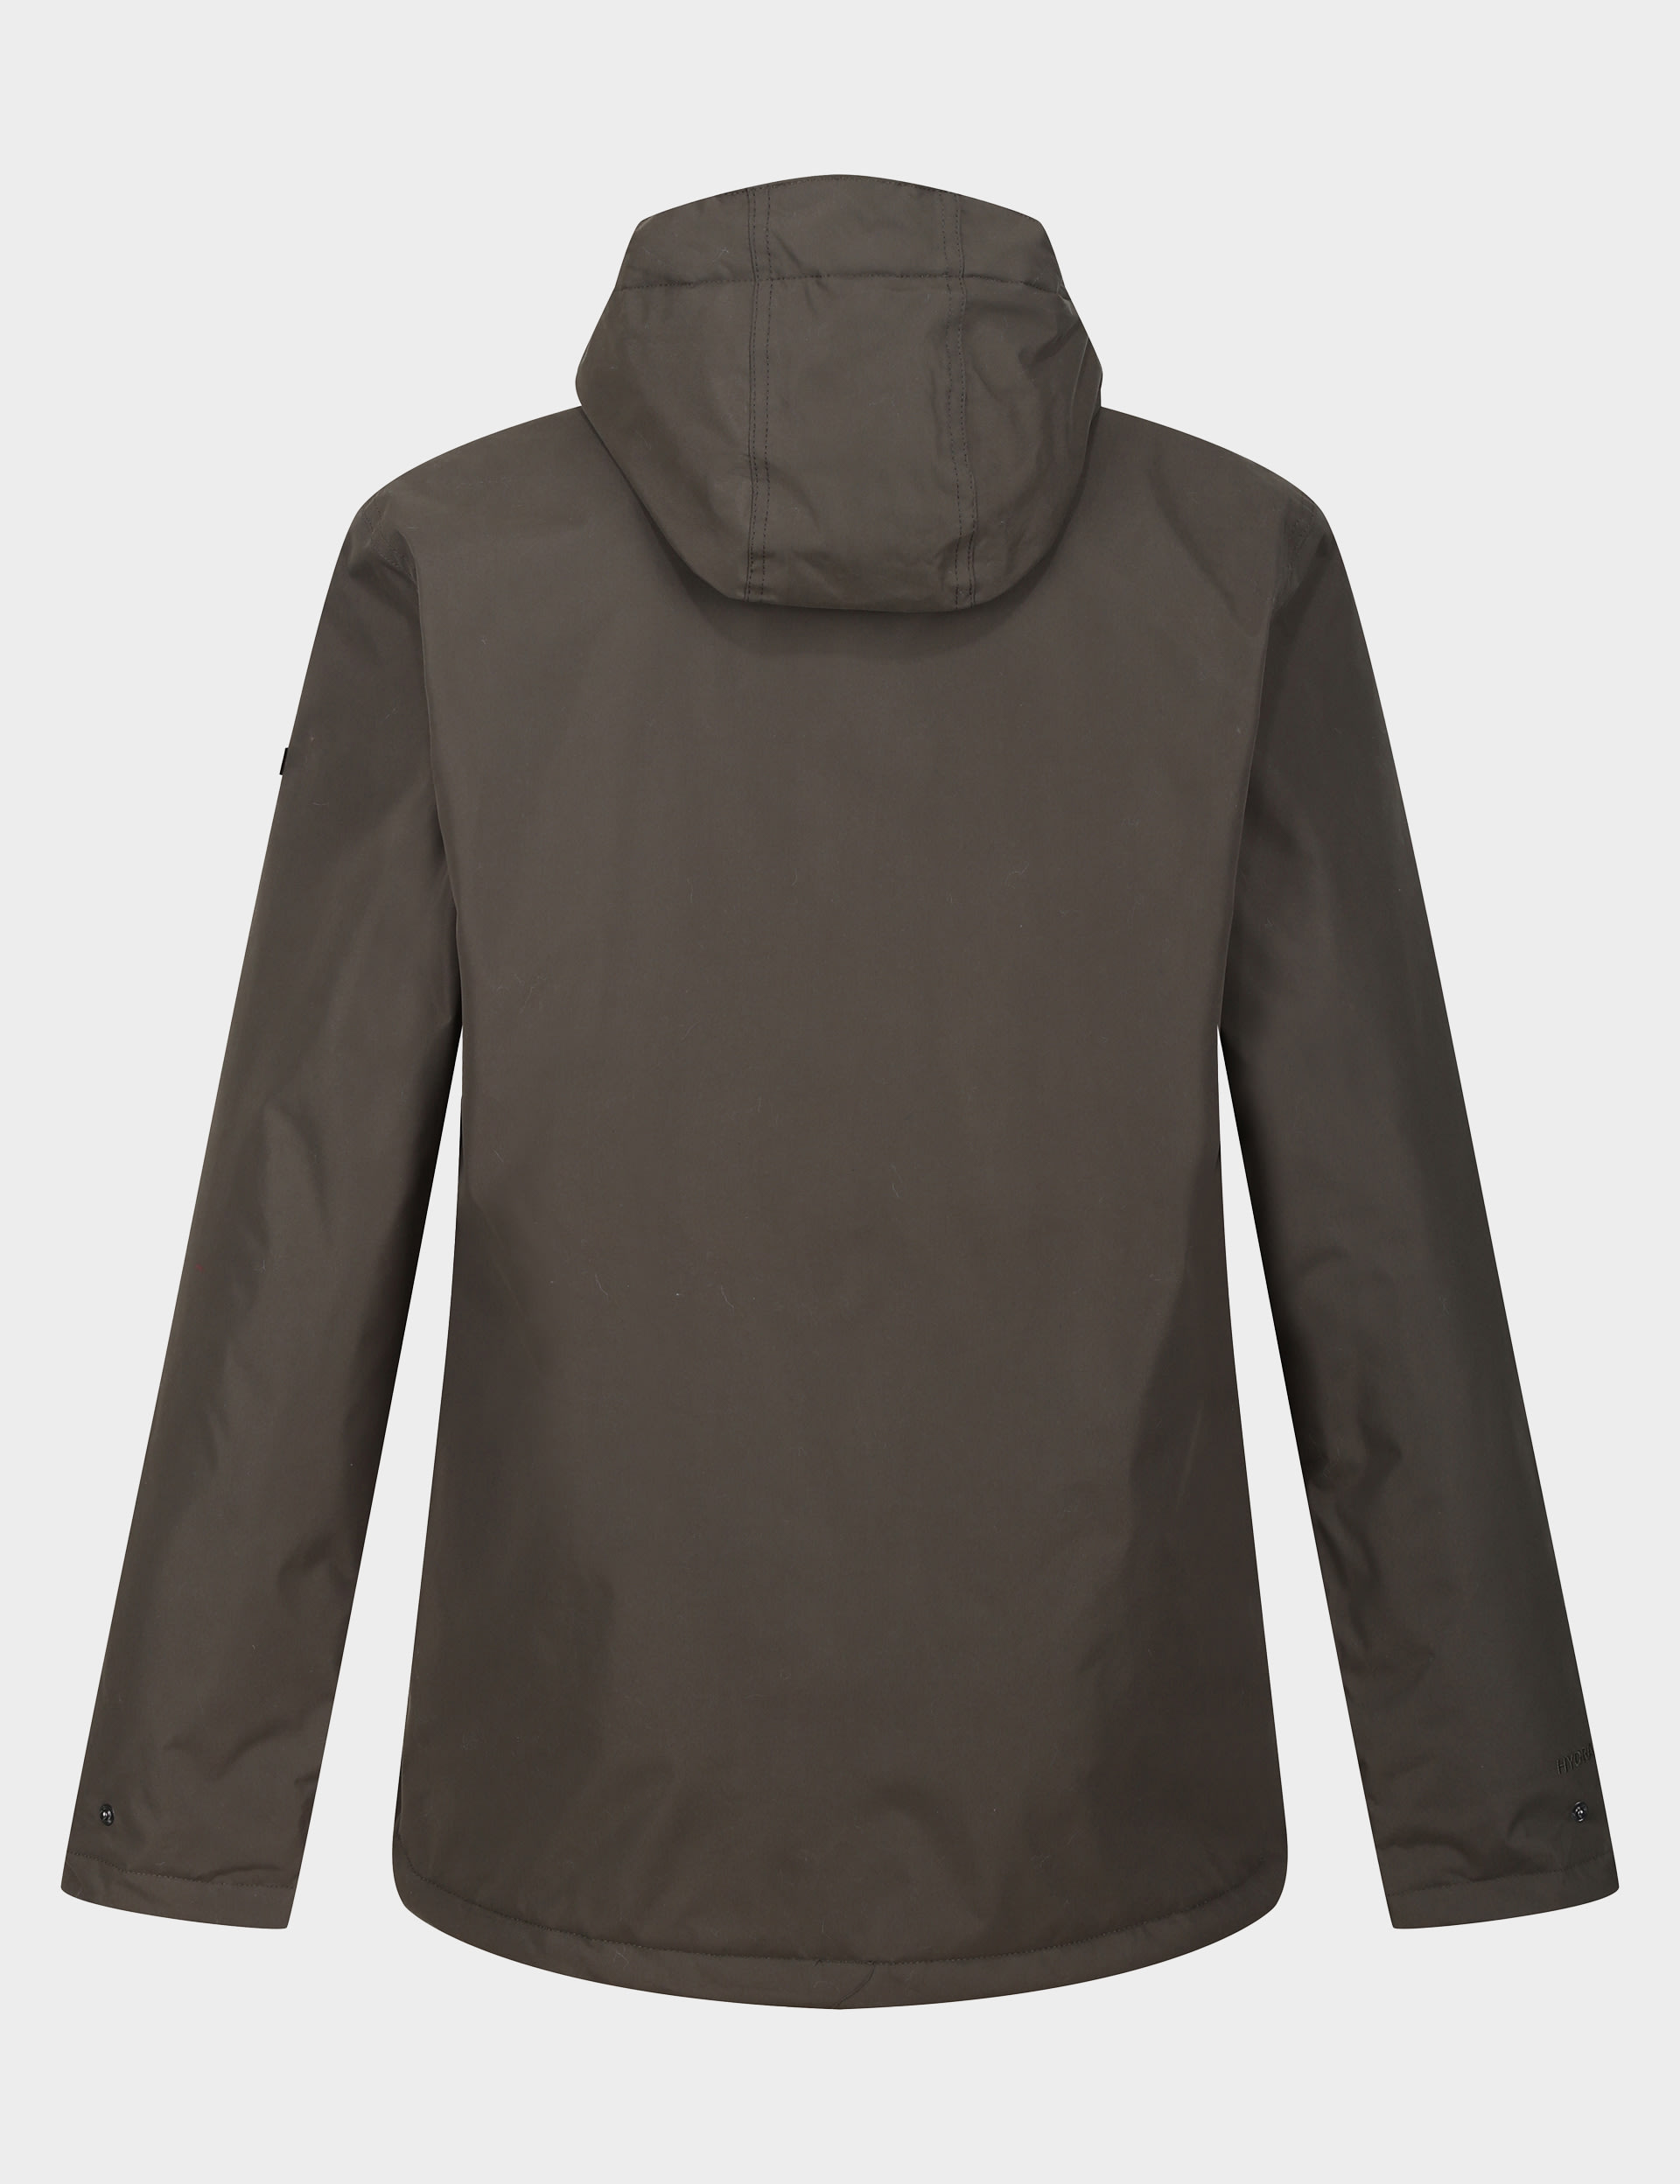 Broadia Waterproof Hooded Raincoat 8 of 8